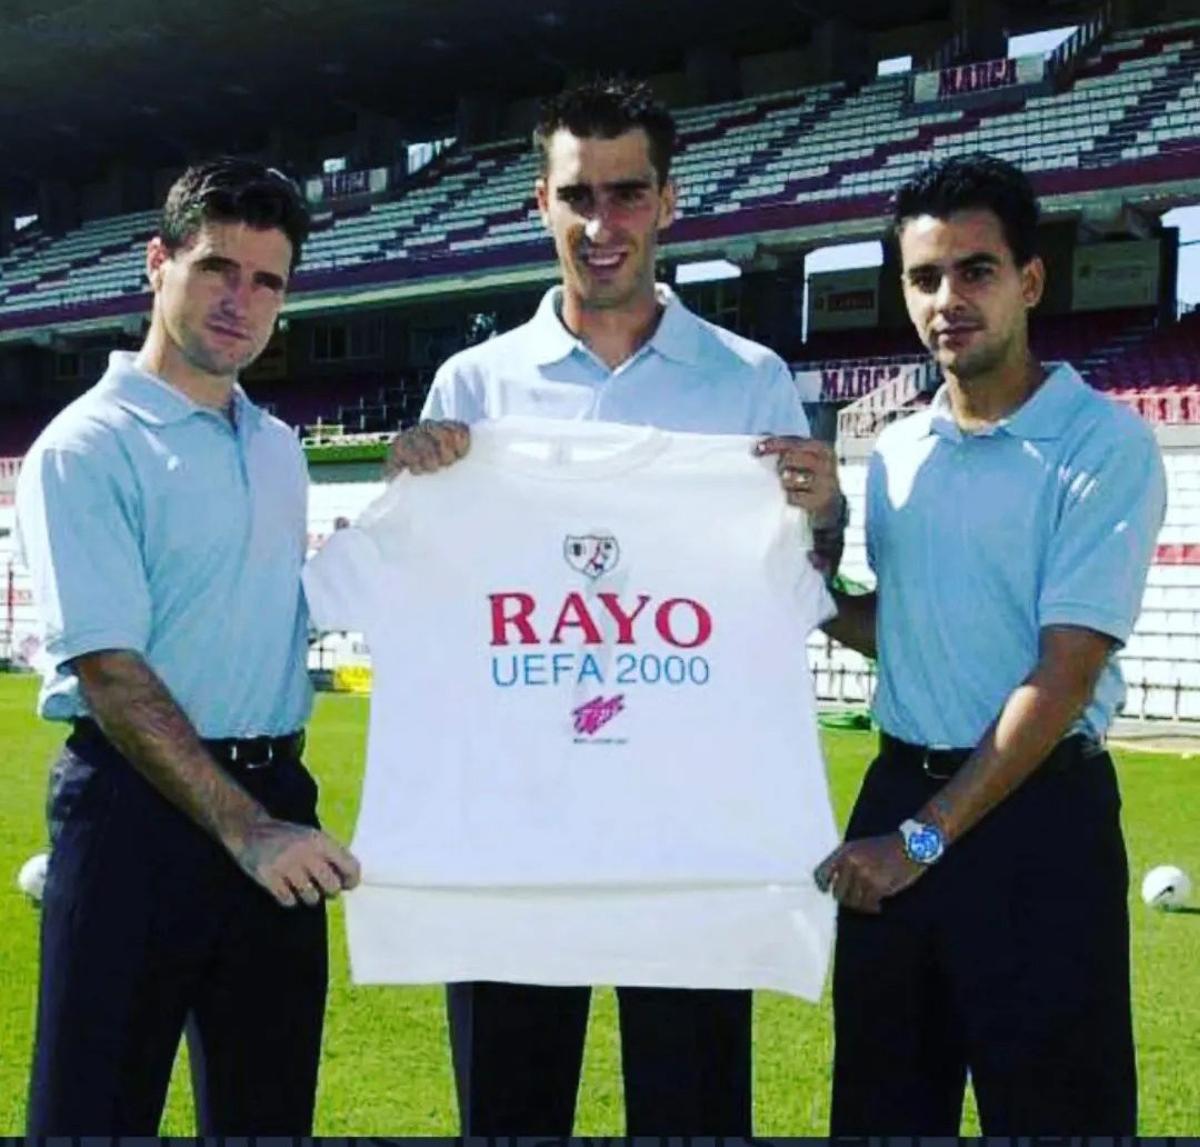 Cota i Míchel, als costats amb Bolo al mig, amb una samarreta commemorativa de la participació del Rayo a la UEFA